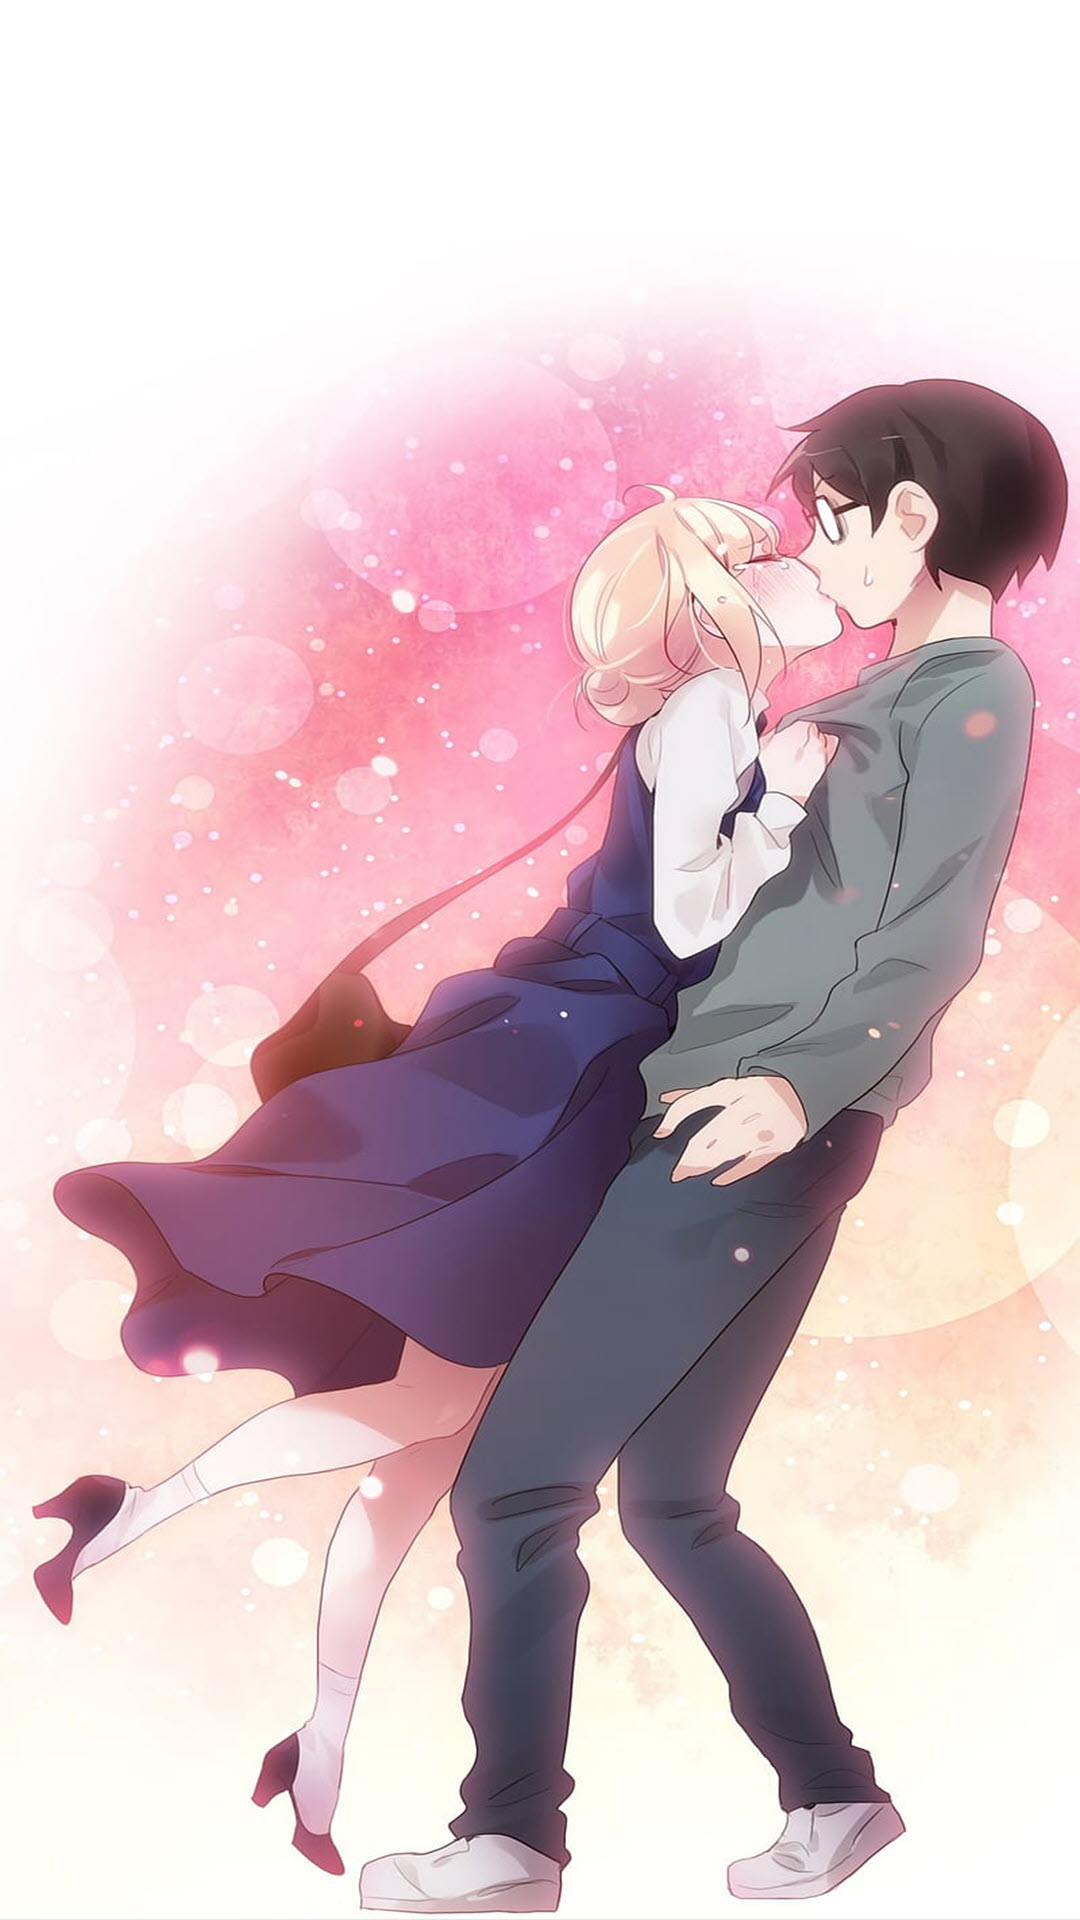 Bạn đang tìm kiếm hình nền đẹp cho màn hình của mình? Hãy xem ngay hình nền anime cặp đôi đẹp với họa tiết tuyệt đẹp này. Hình ảnh đầy tình cảm, sắc màu tươi sáng sẽ mang lại cho bạn một trải nghiệm thú vị khi sử dụng máy tính.